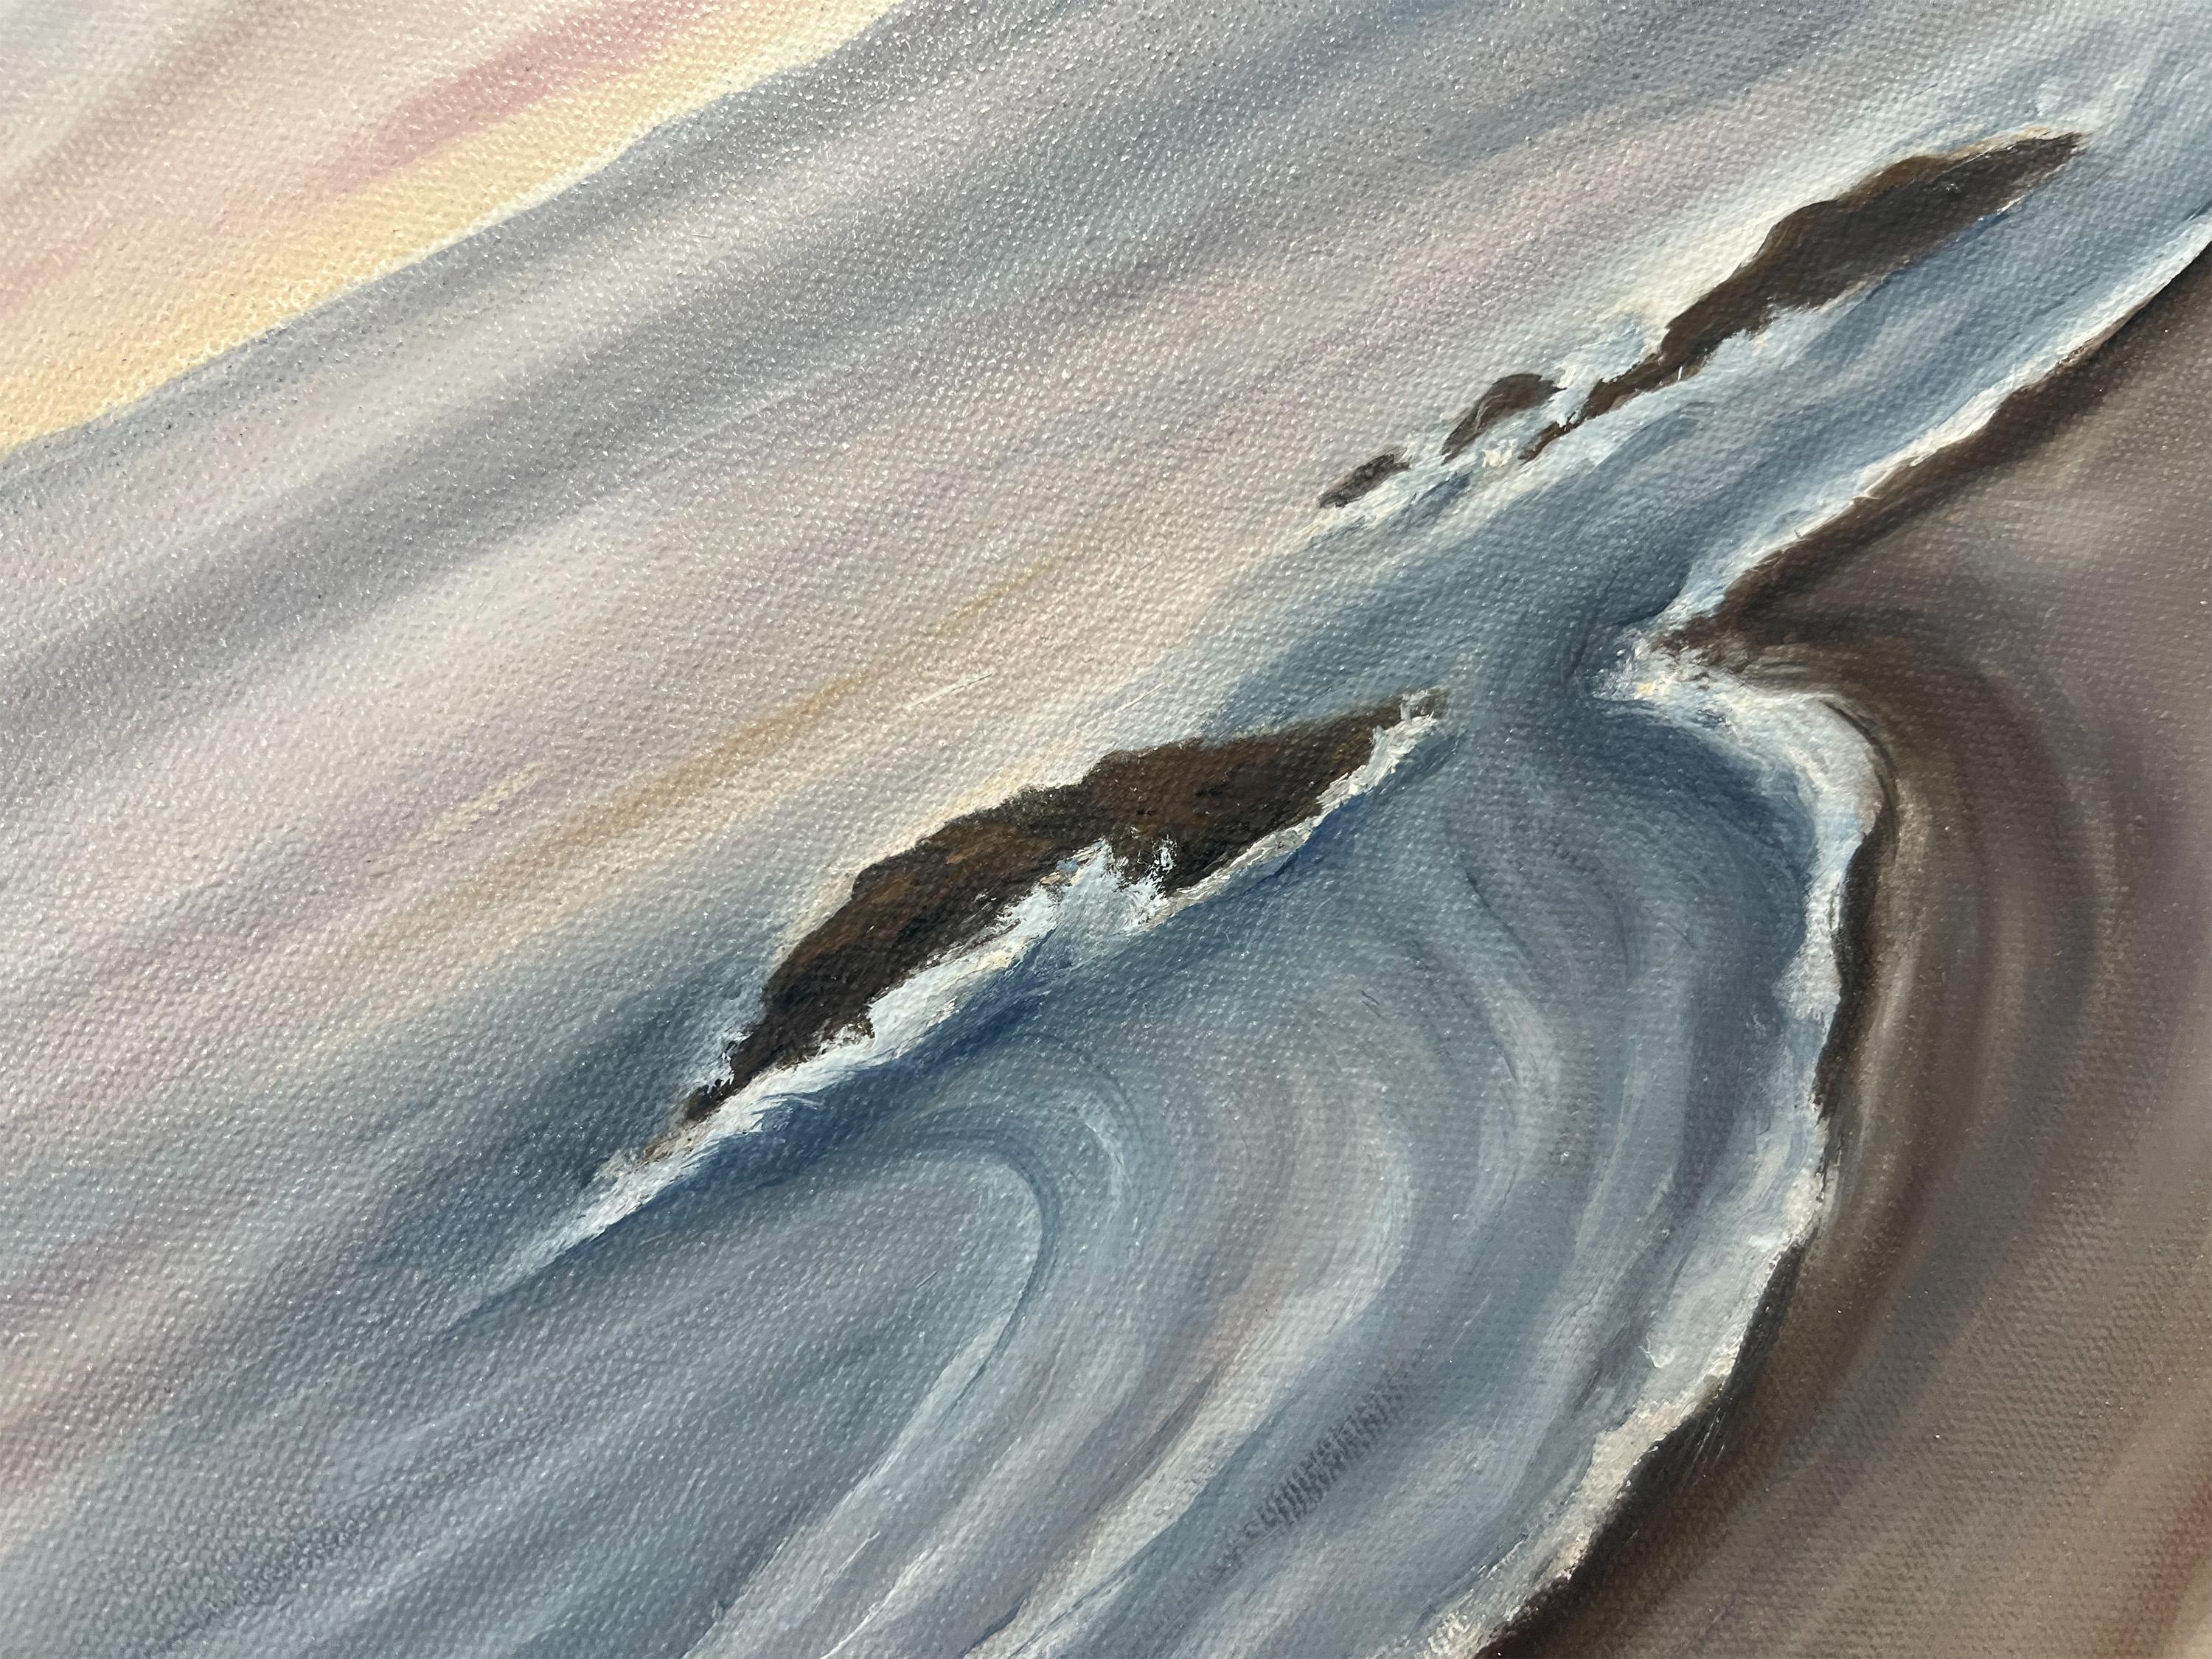 <p>Kommentare des Künstlers<br />Die Künstlerin Pamela Hoke zeigt eine malerische Küstenlandschaft in den letzten Stunden vor Sonnenuntergang. Sie erinnert sich, dass sie eine zufällig auf dem Boden liegende Feder fand, die sie daran erinnerte, eine